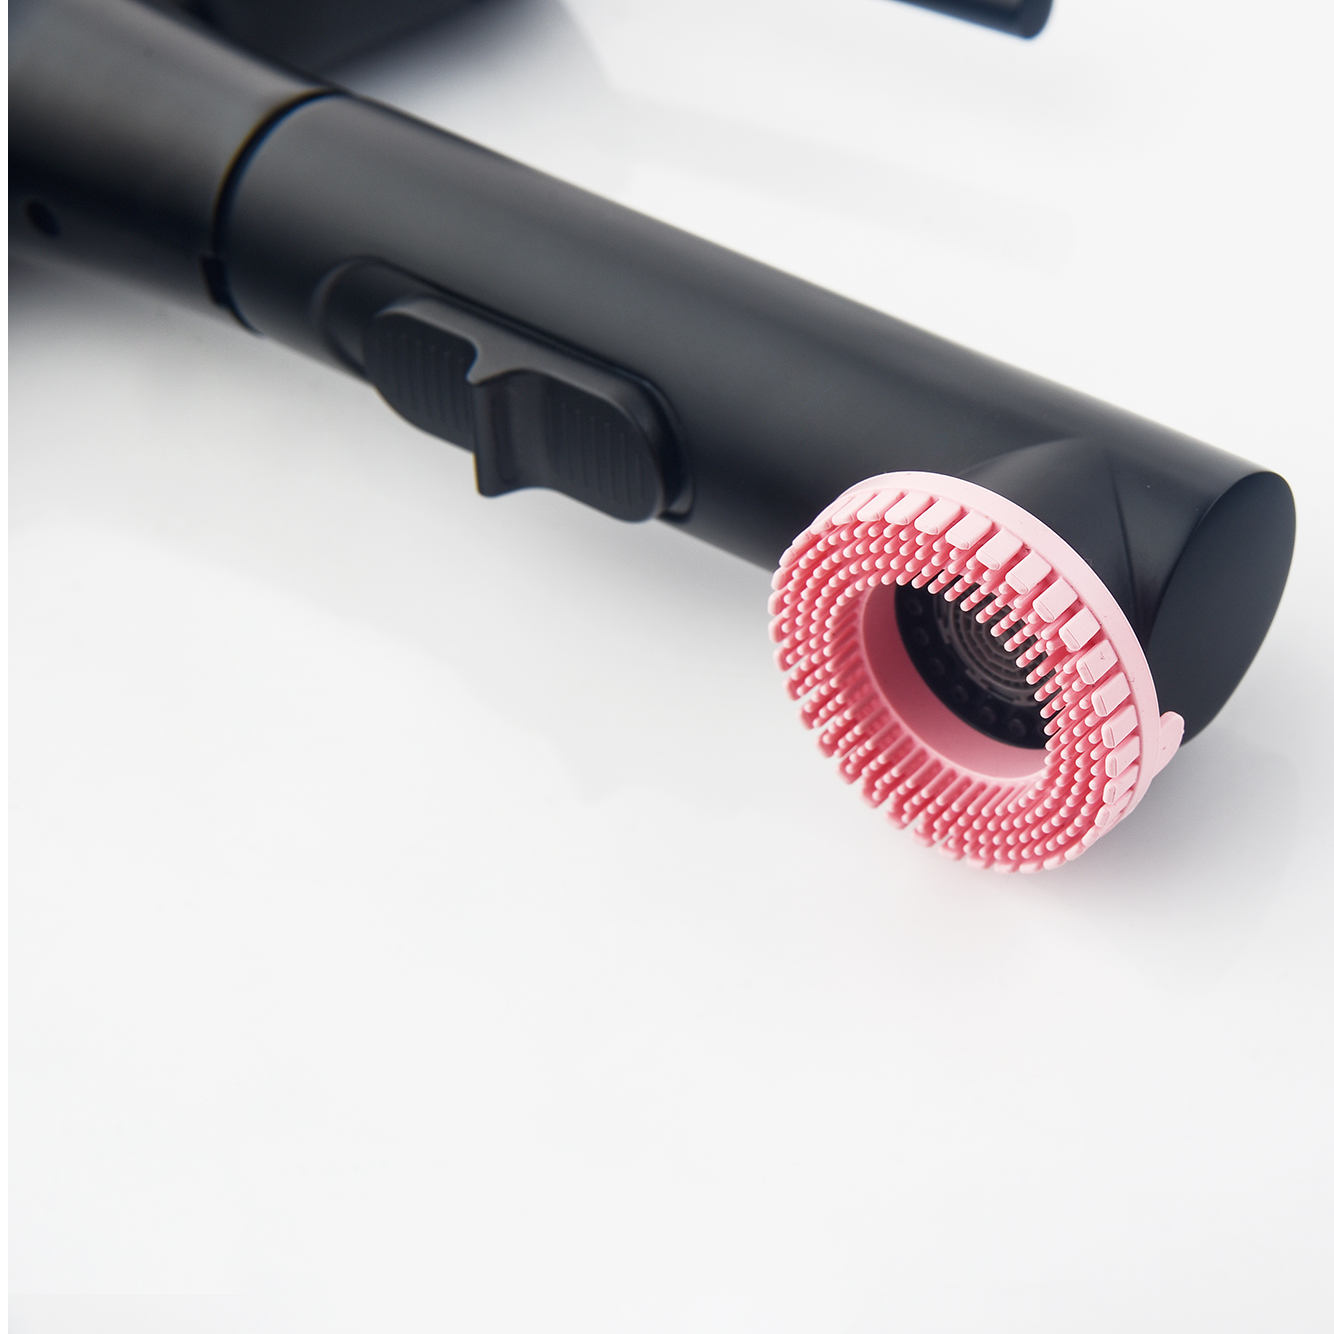 Современный смеситель для раковины с одной ручкой, матовый черный смеситель для ванной комнаты